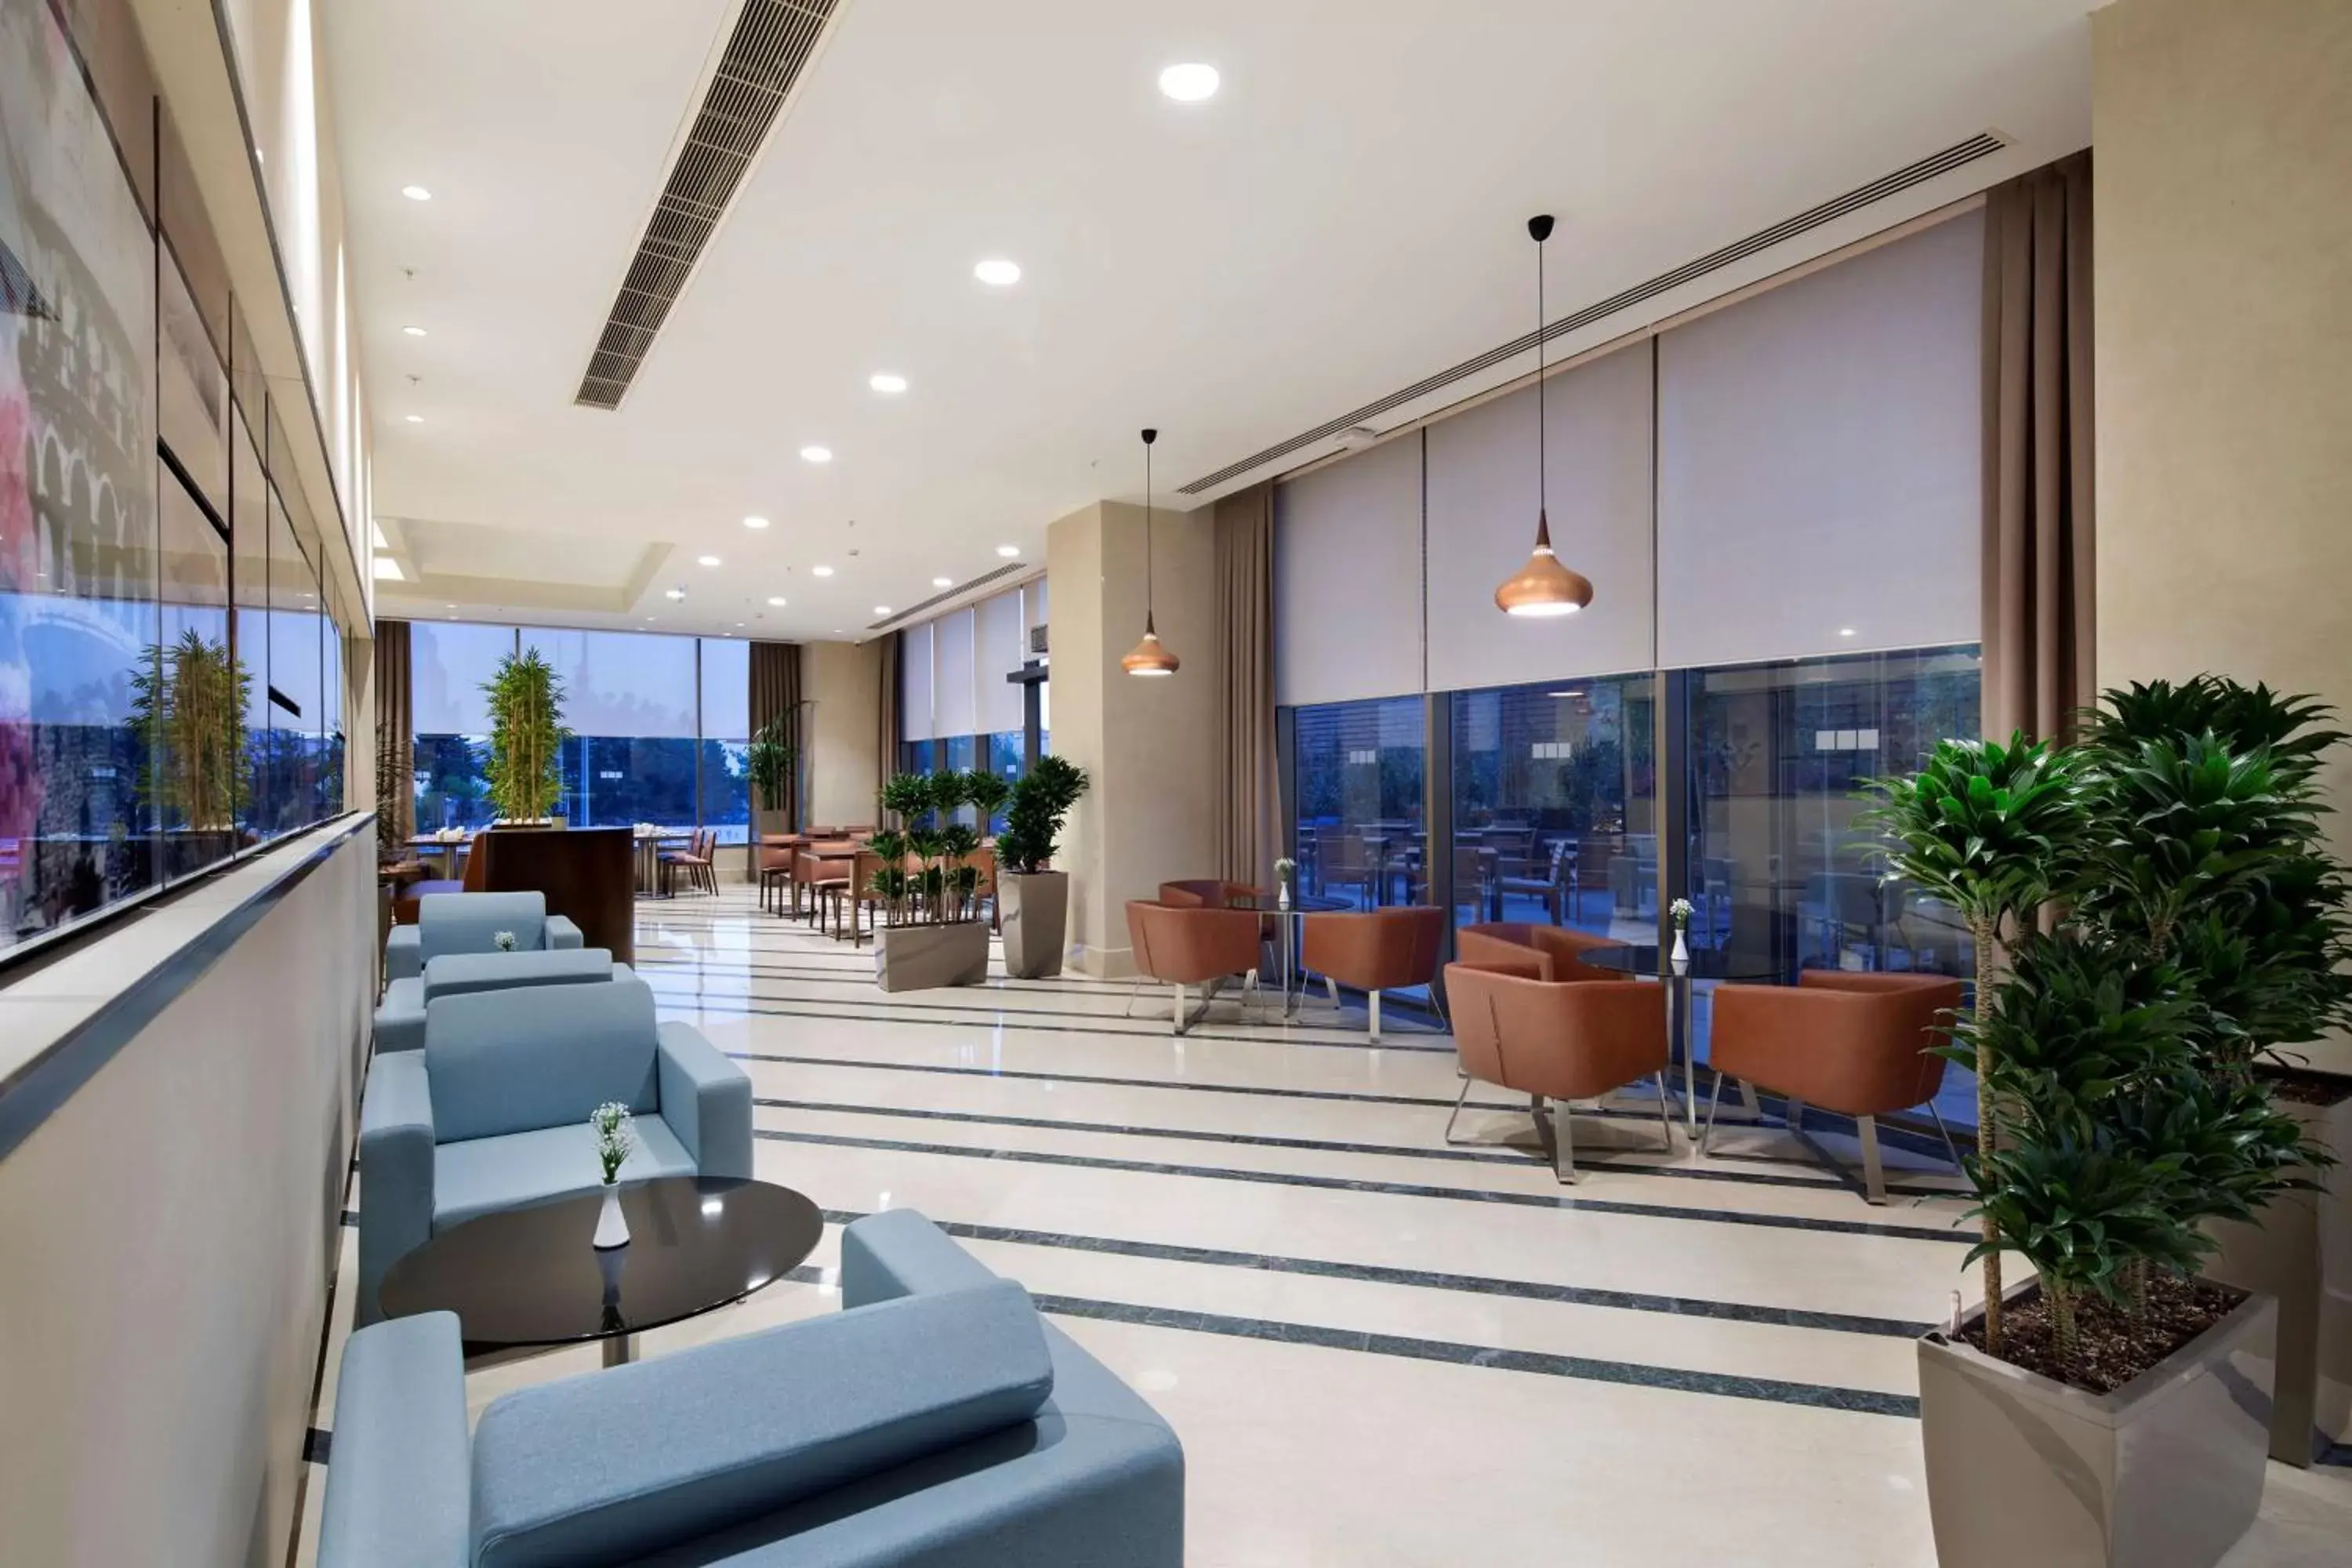 Lobby or reception, Lobby/Reception in Hilton Garden Inn Istanbul Beylikduzu